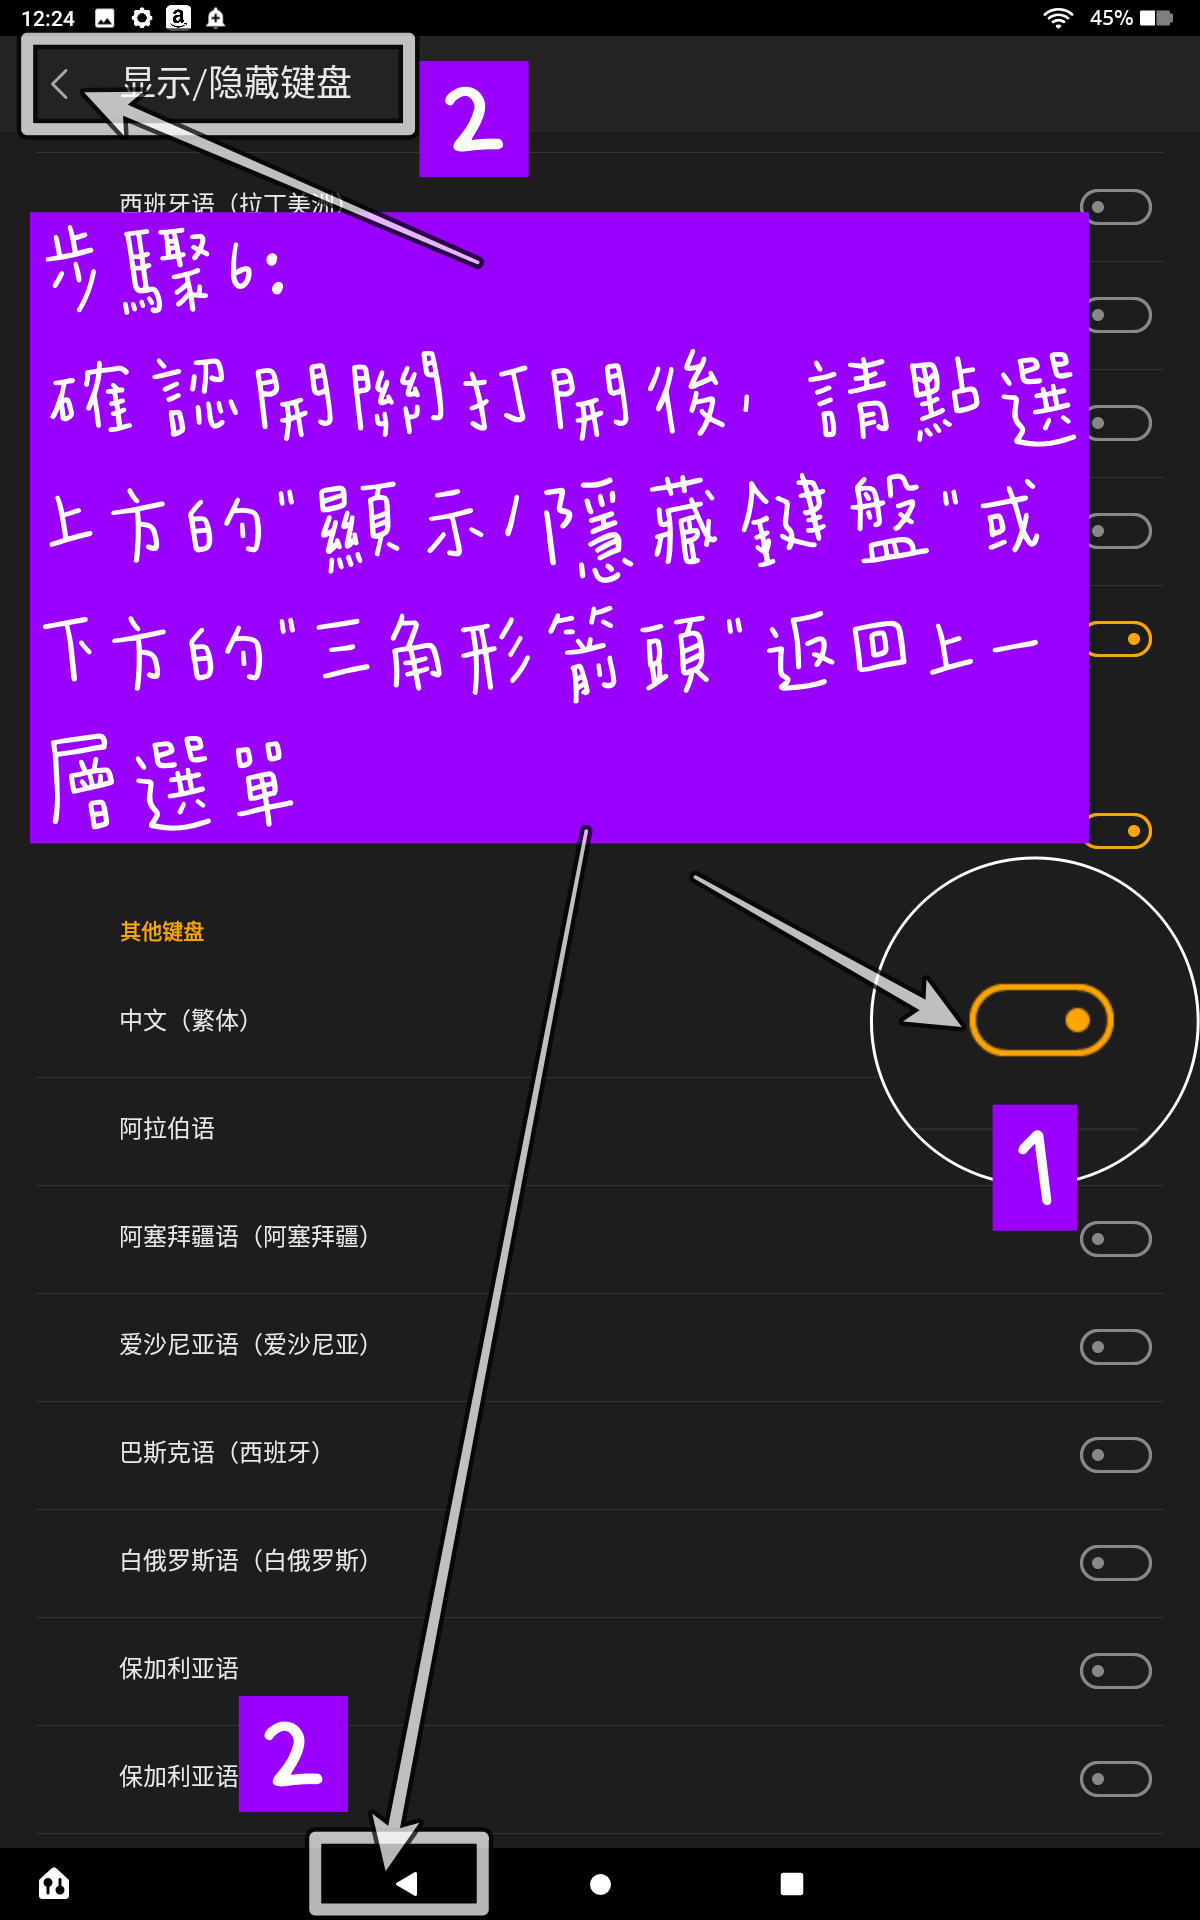 啟用AMAZON FIRE HD 10內建繁體中文輸入法 步驟6 確認開關已打開再點選上方或下方的箭頭